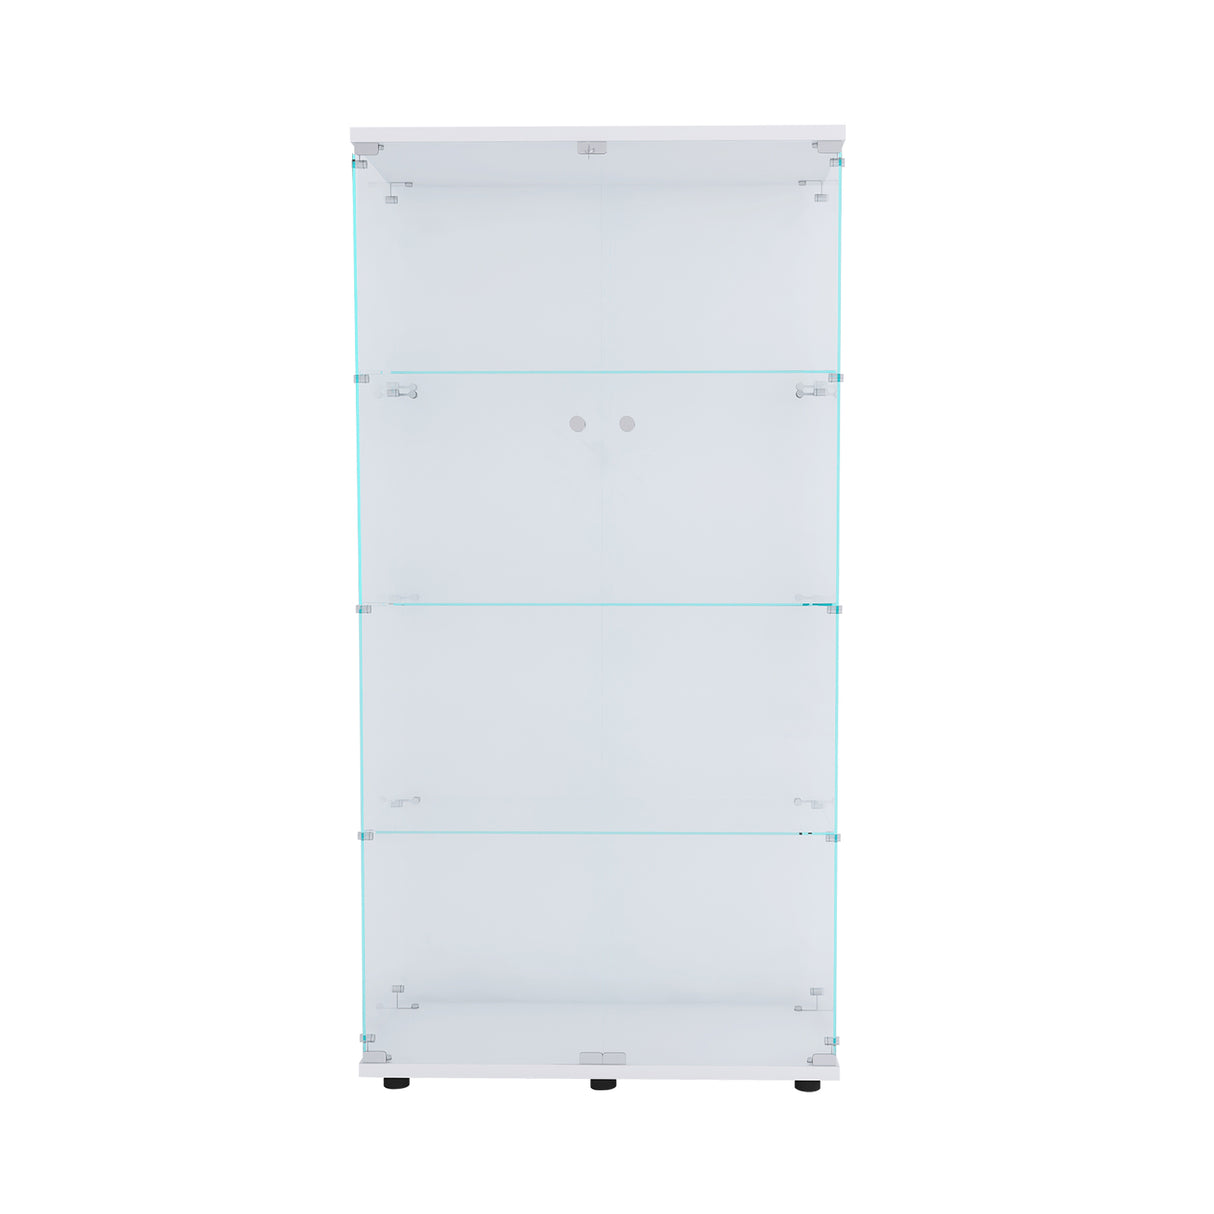 Two-door Glass Display Cabinet 4 Shelves with Door, Floor Standing Curio Bookshelf for Living Room Bedroom Office, 64.56” x 31.69”x 14.37”, White Home Elegance USA